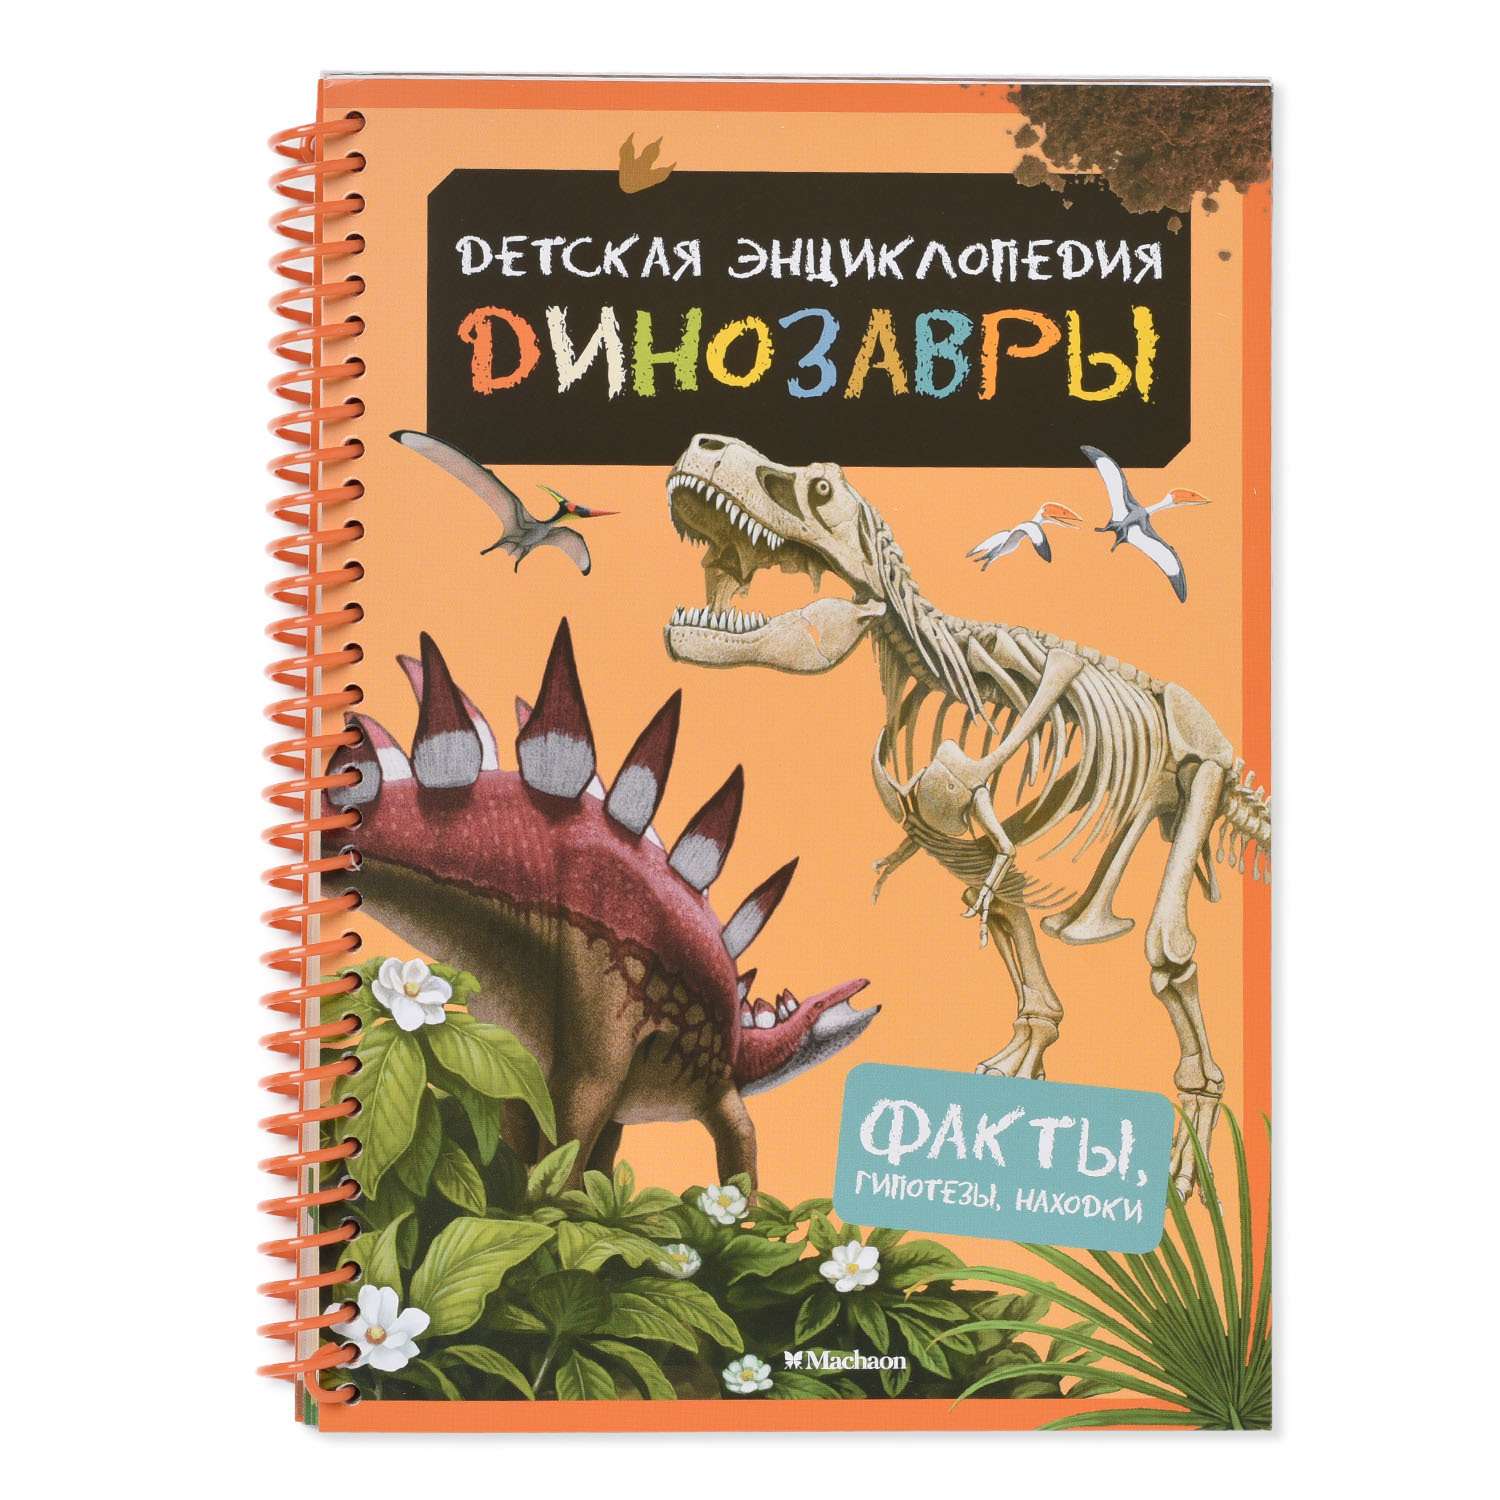 Детская энциклопедия Махаон Динозавры. С магнитами - фото 3